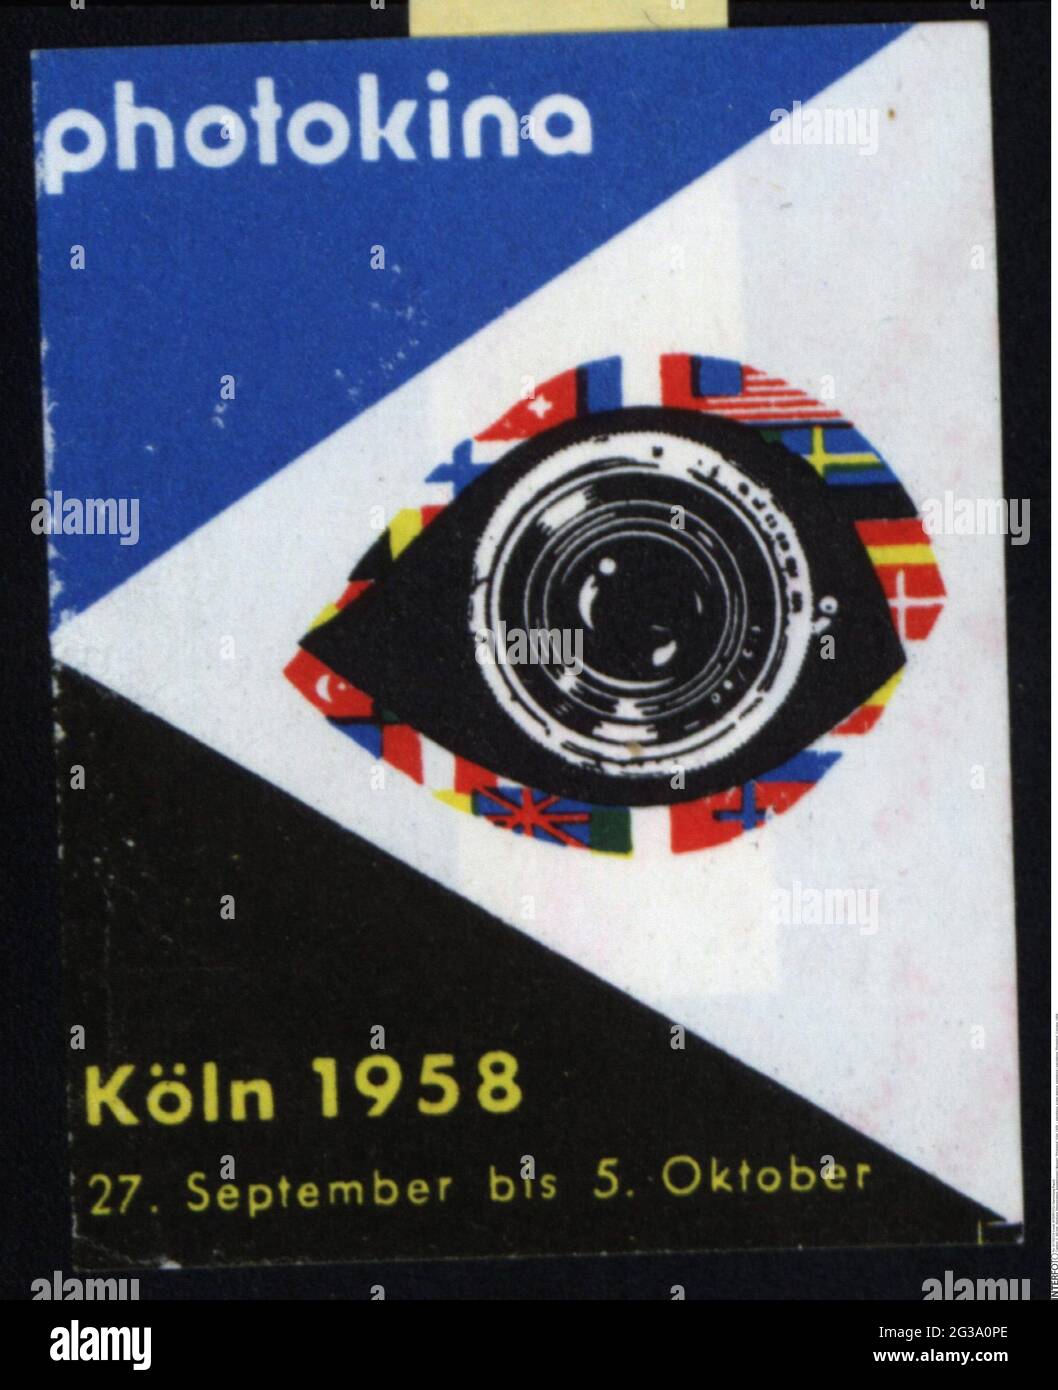 Publicité, timbres-affiches, expositions / expositions, « Photokina », Cologne, 1958, INFO-AUTORISATION-DROITS-SUPPLÉMENTAIRES-NON-DISPONIBLE Banque D'Images